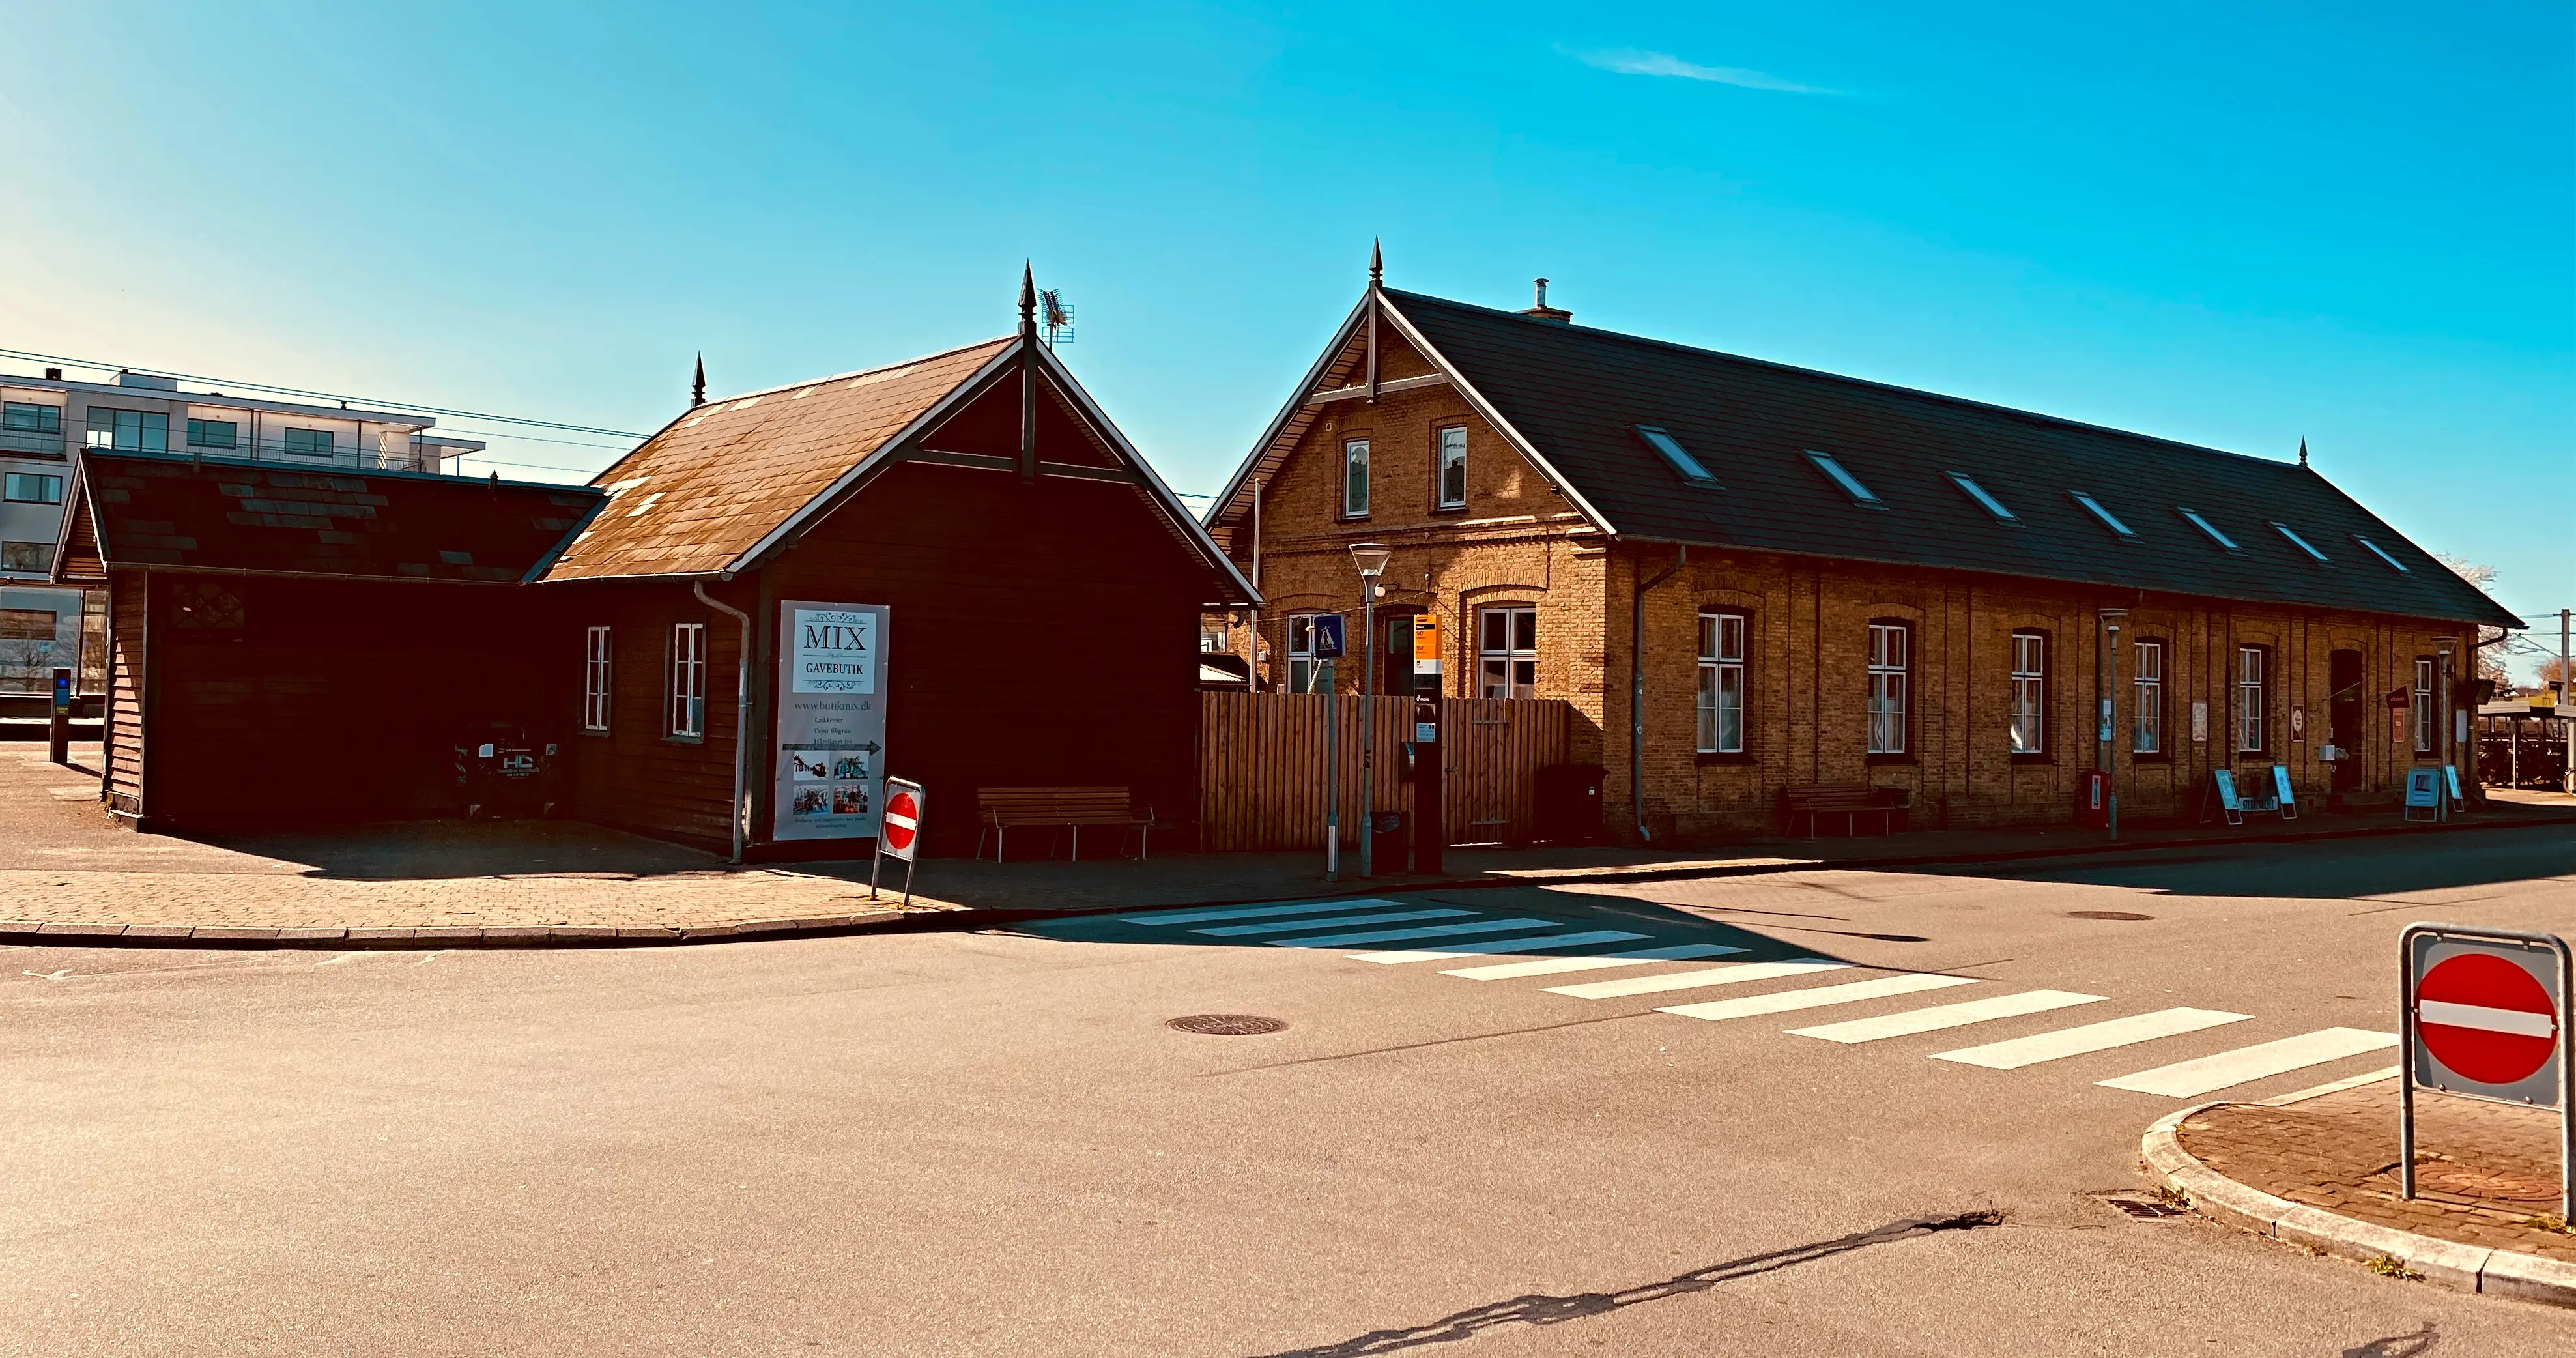 Måløv Station.